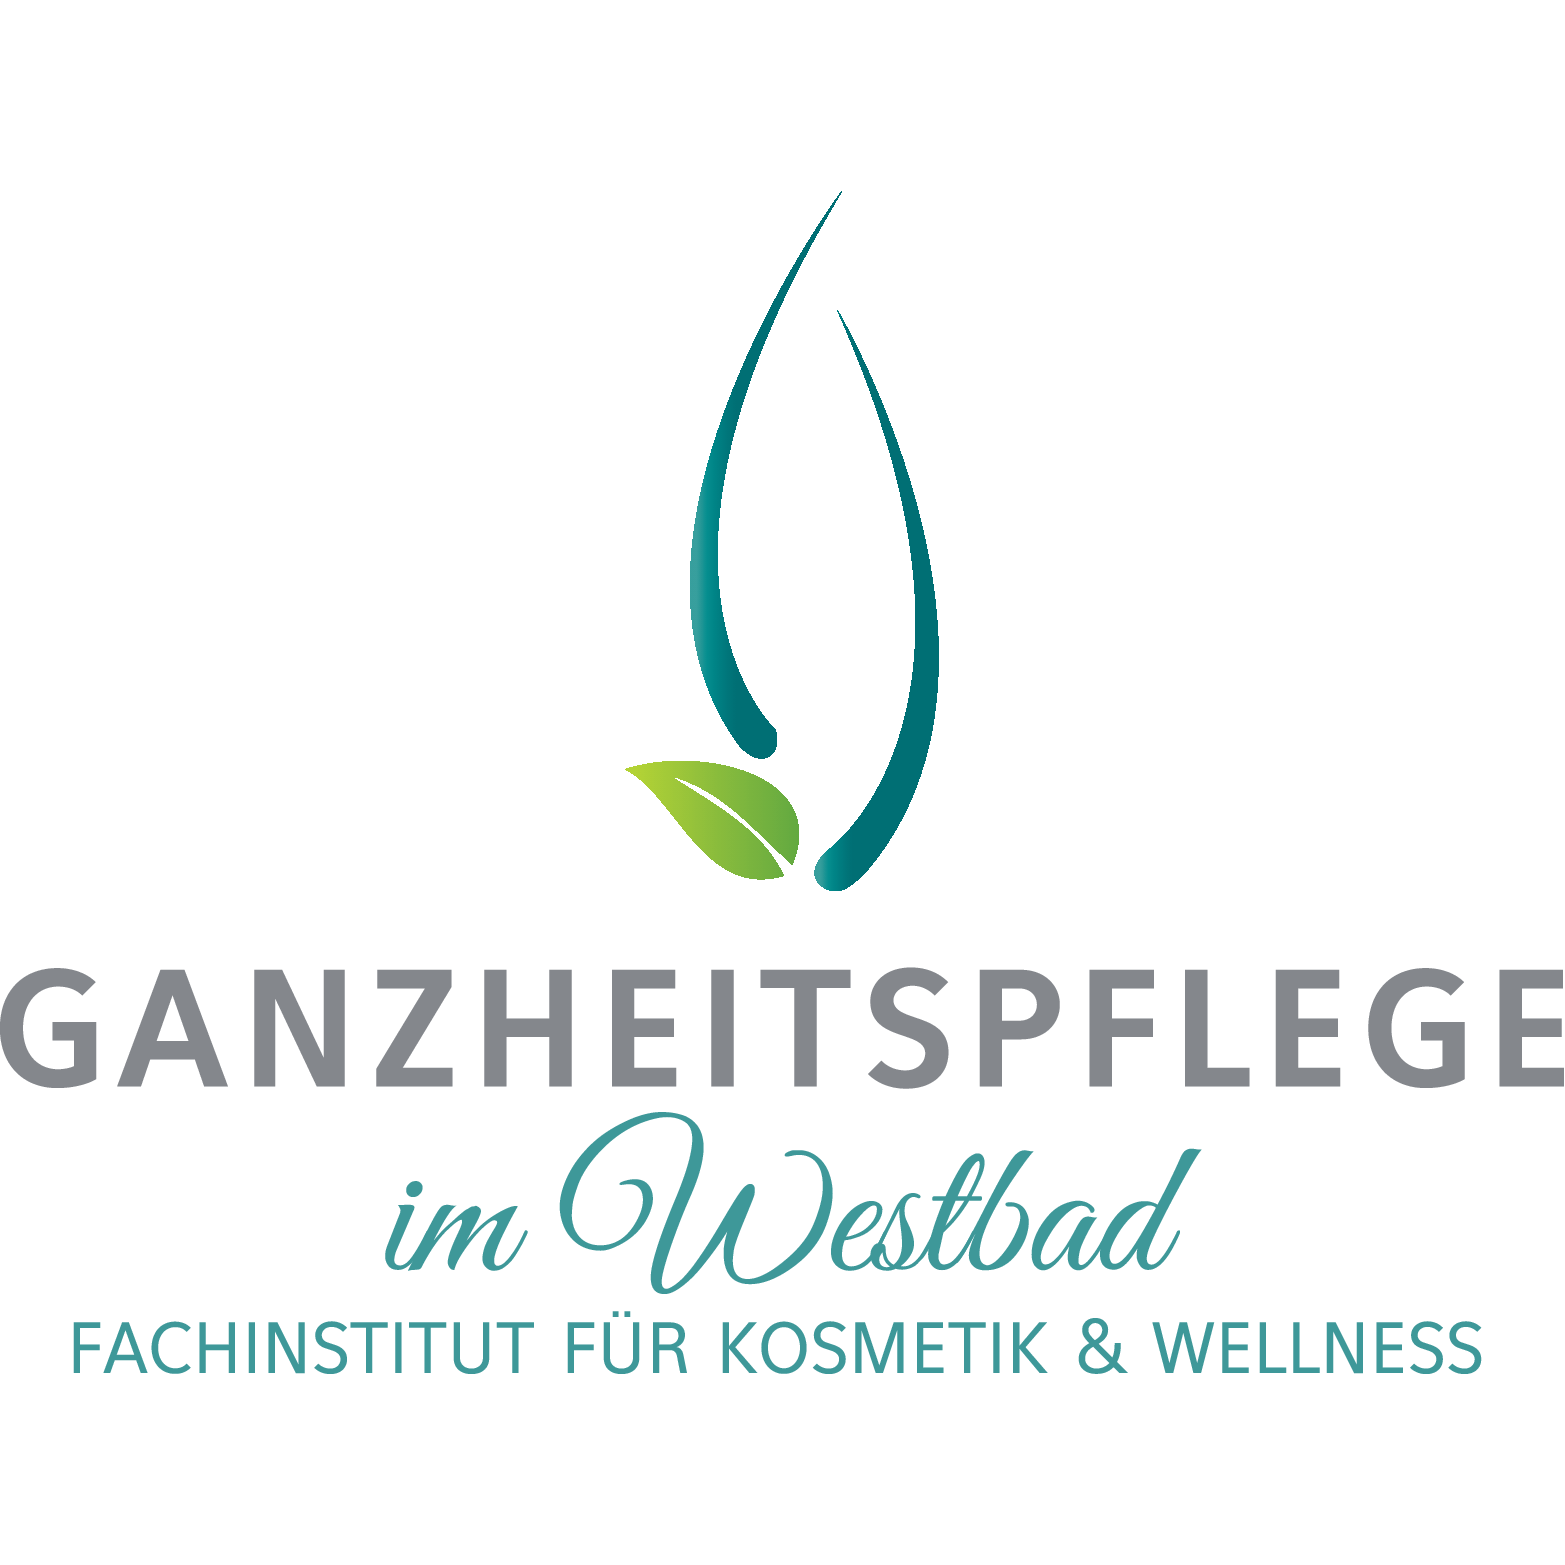 Ganzheitspflege im Westbad in Regensburg - Logo